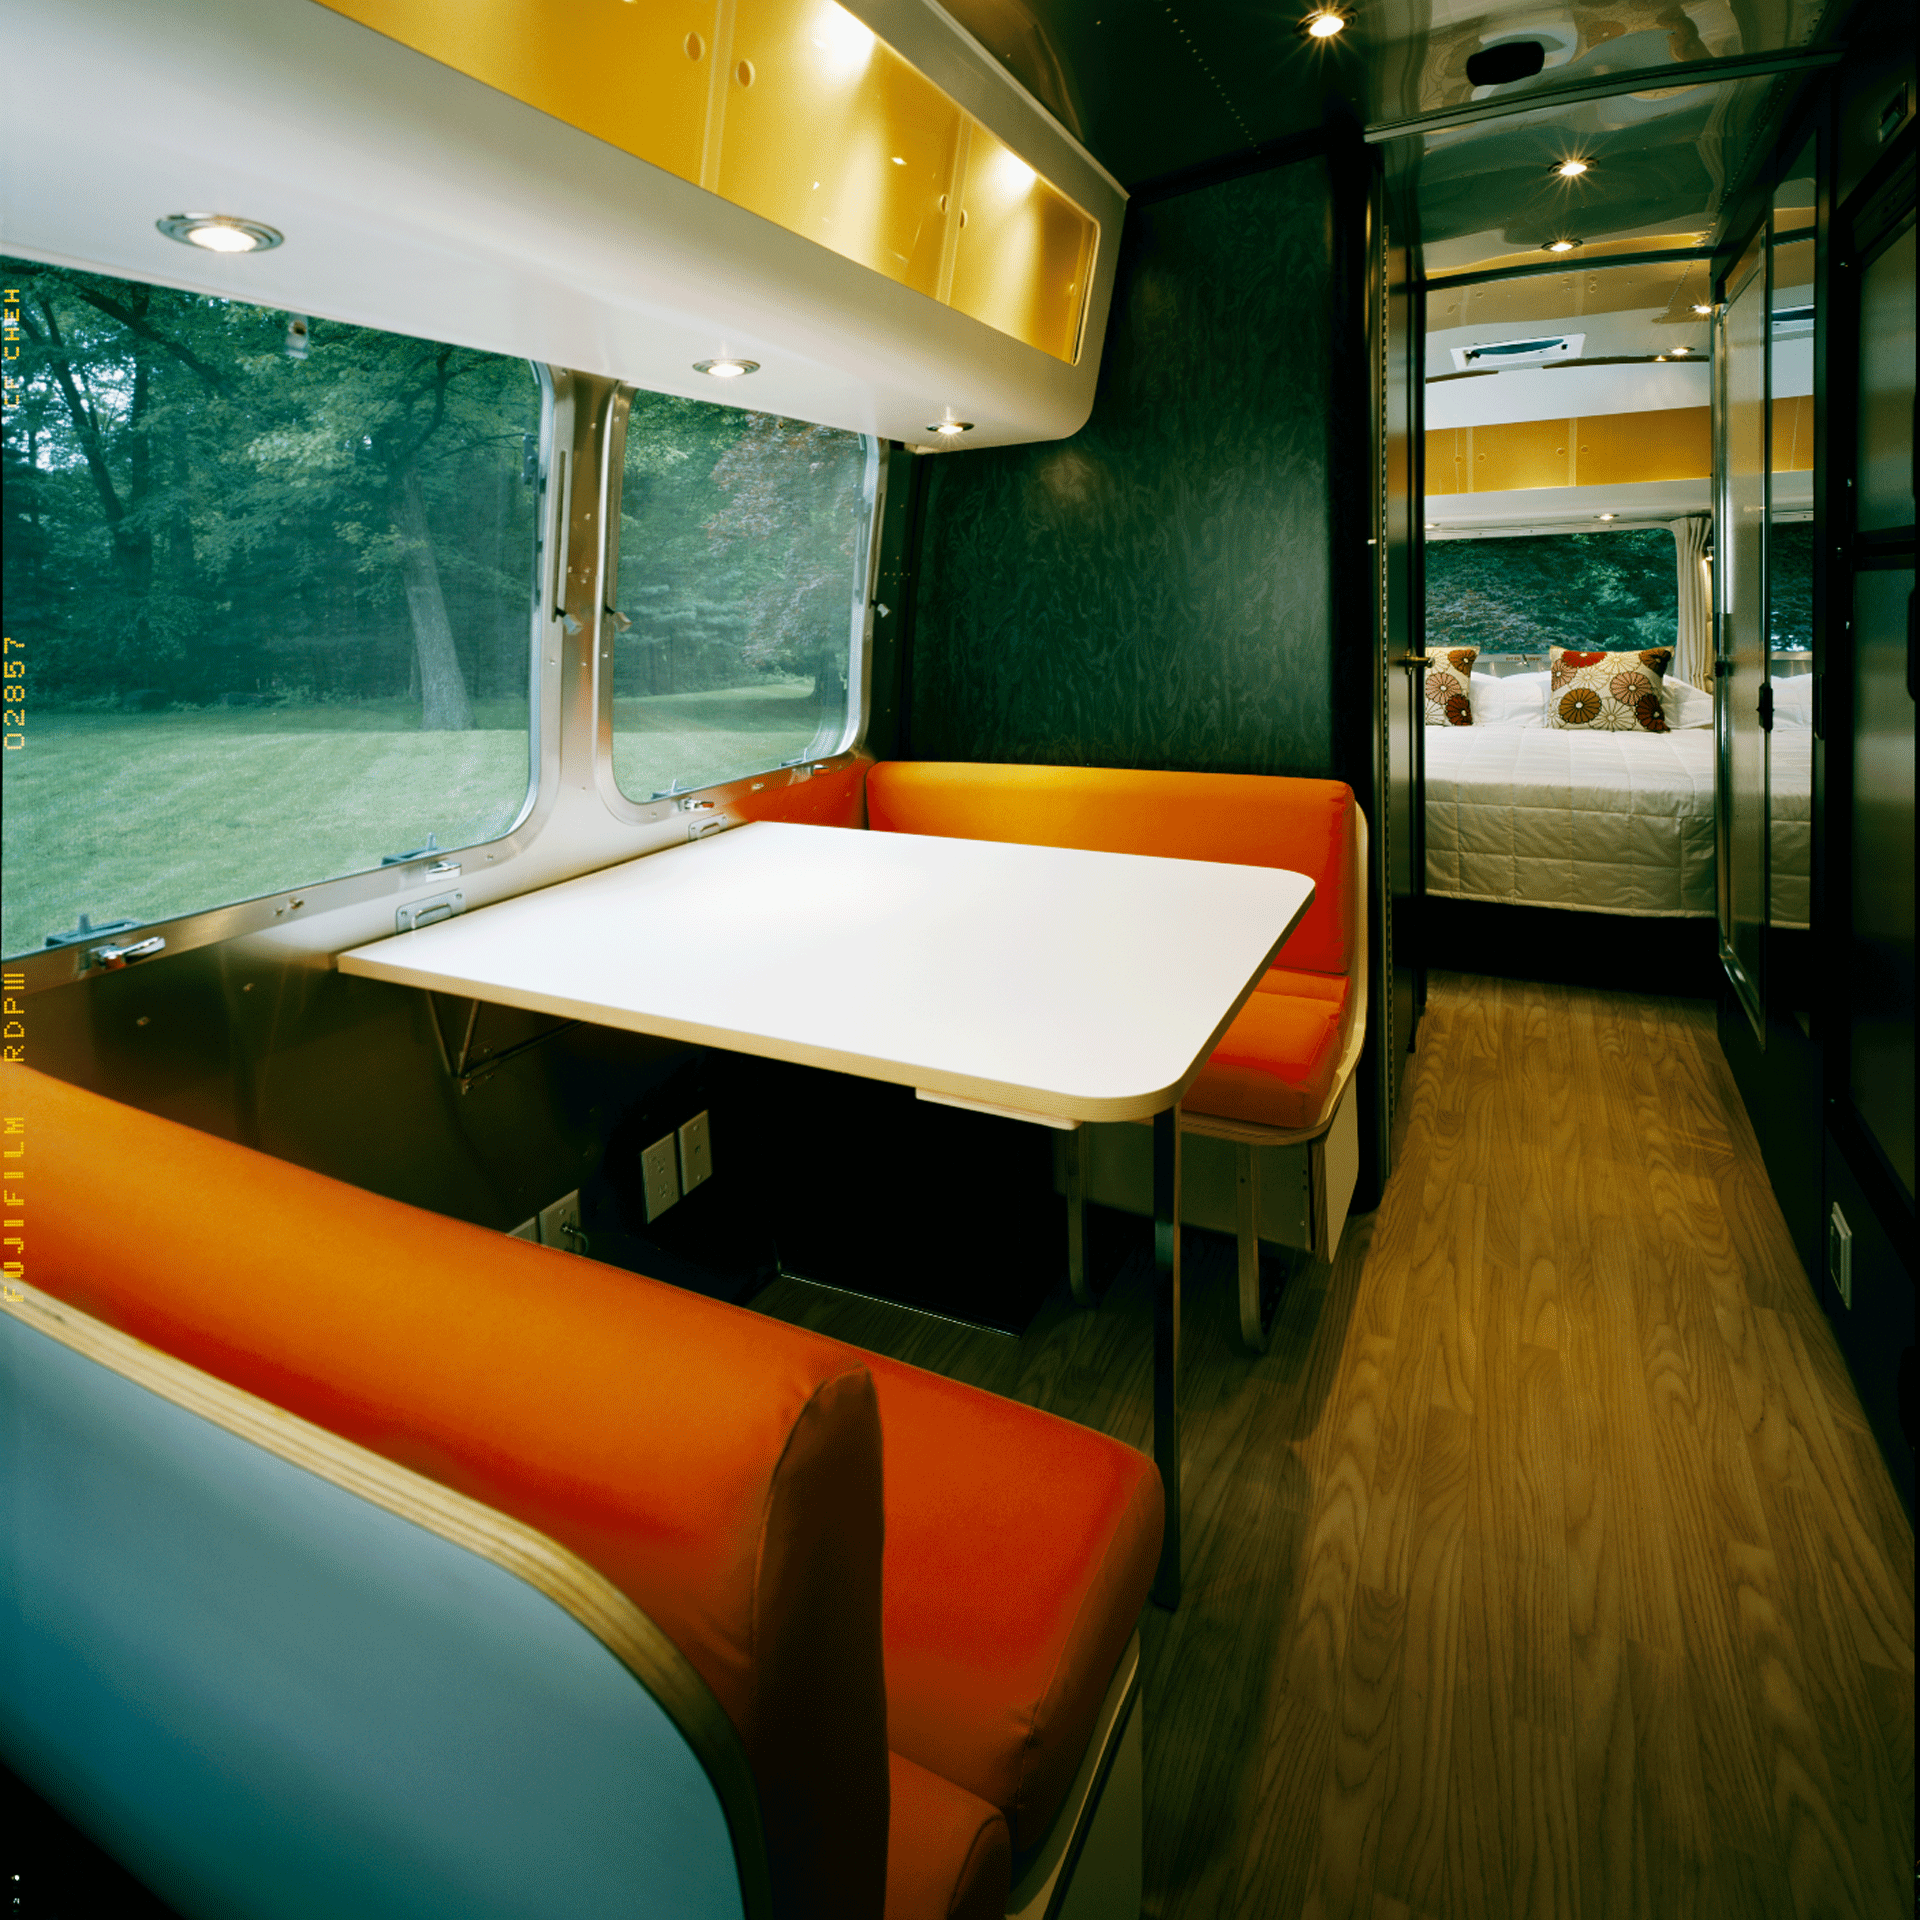 这是一辆2010年的Airstream国际旅行拖车的内部装饰。